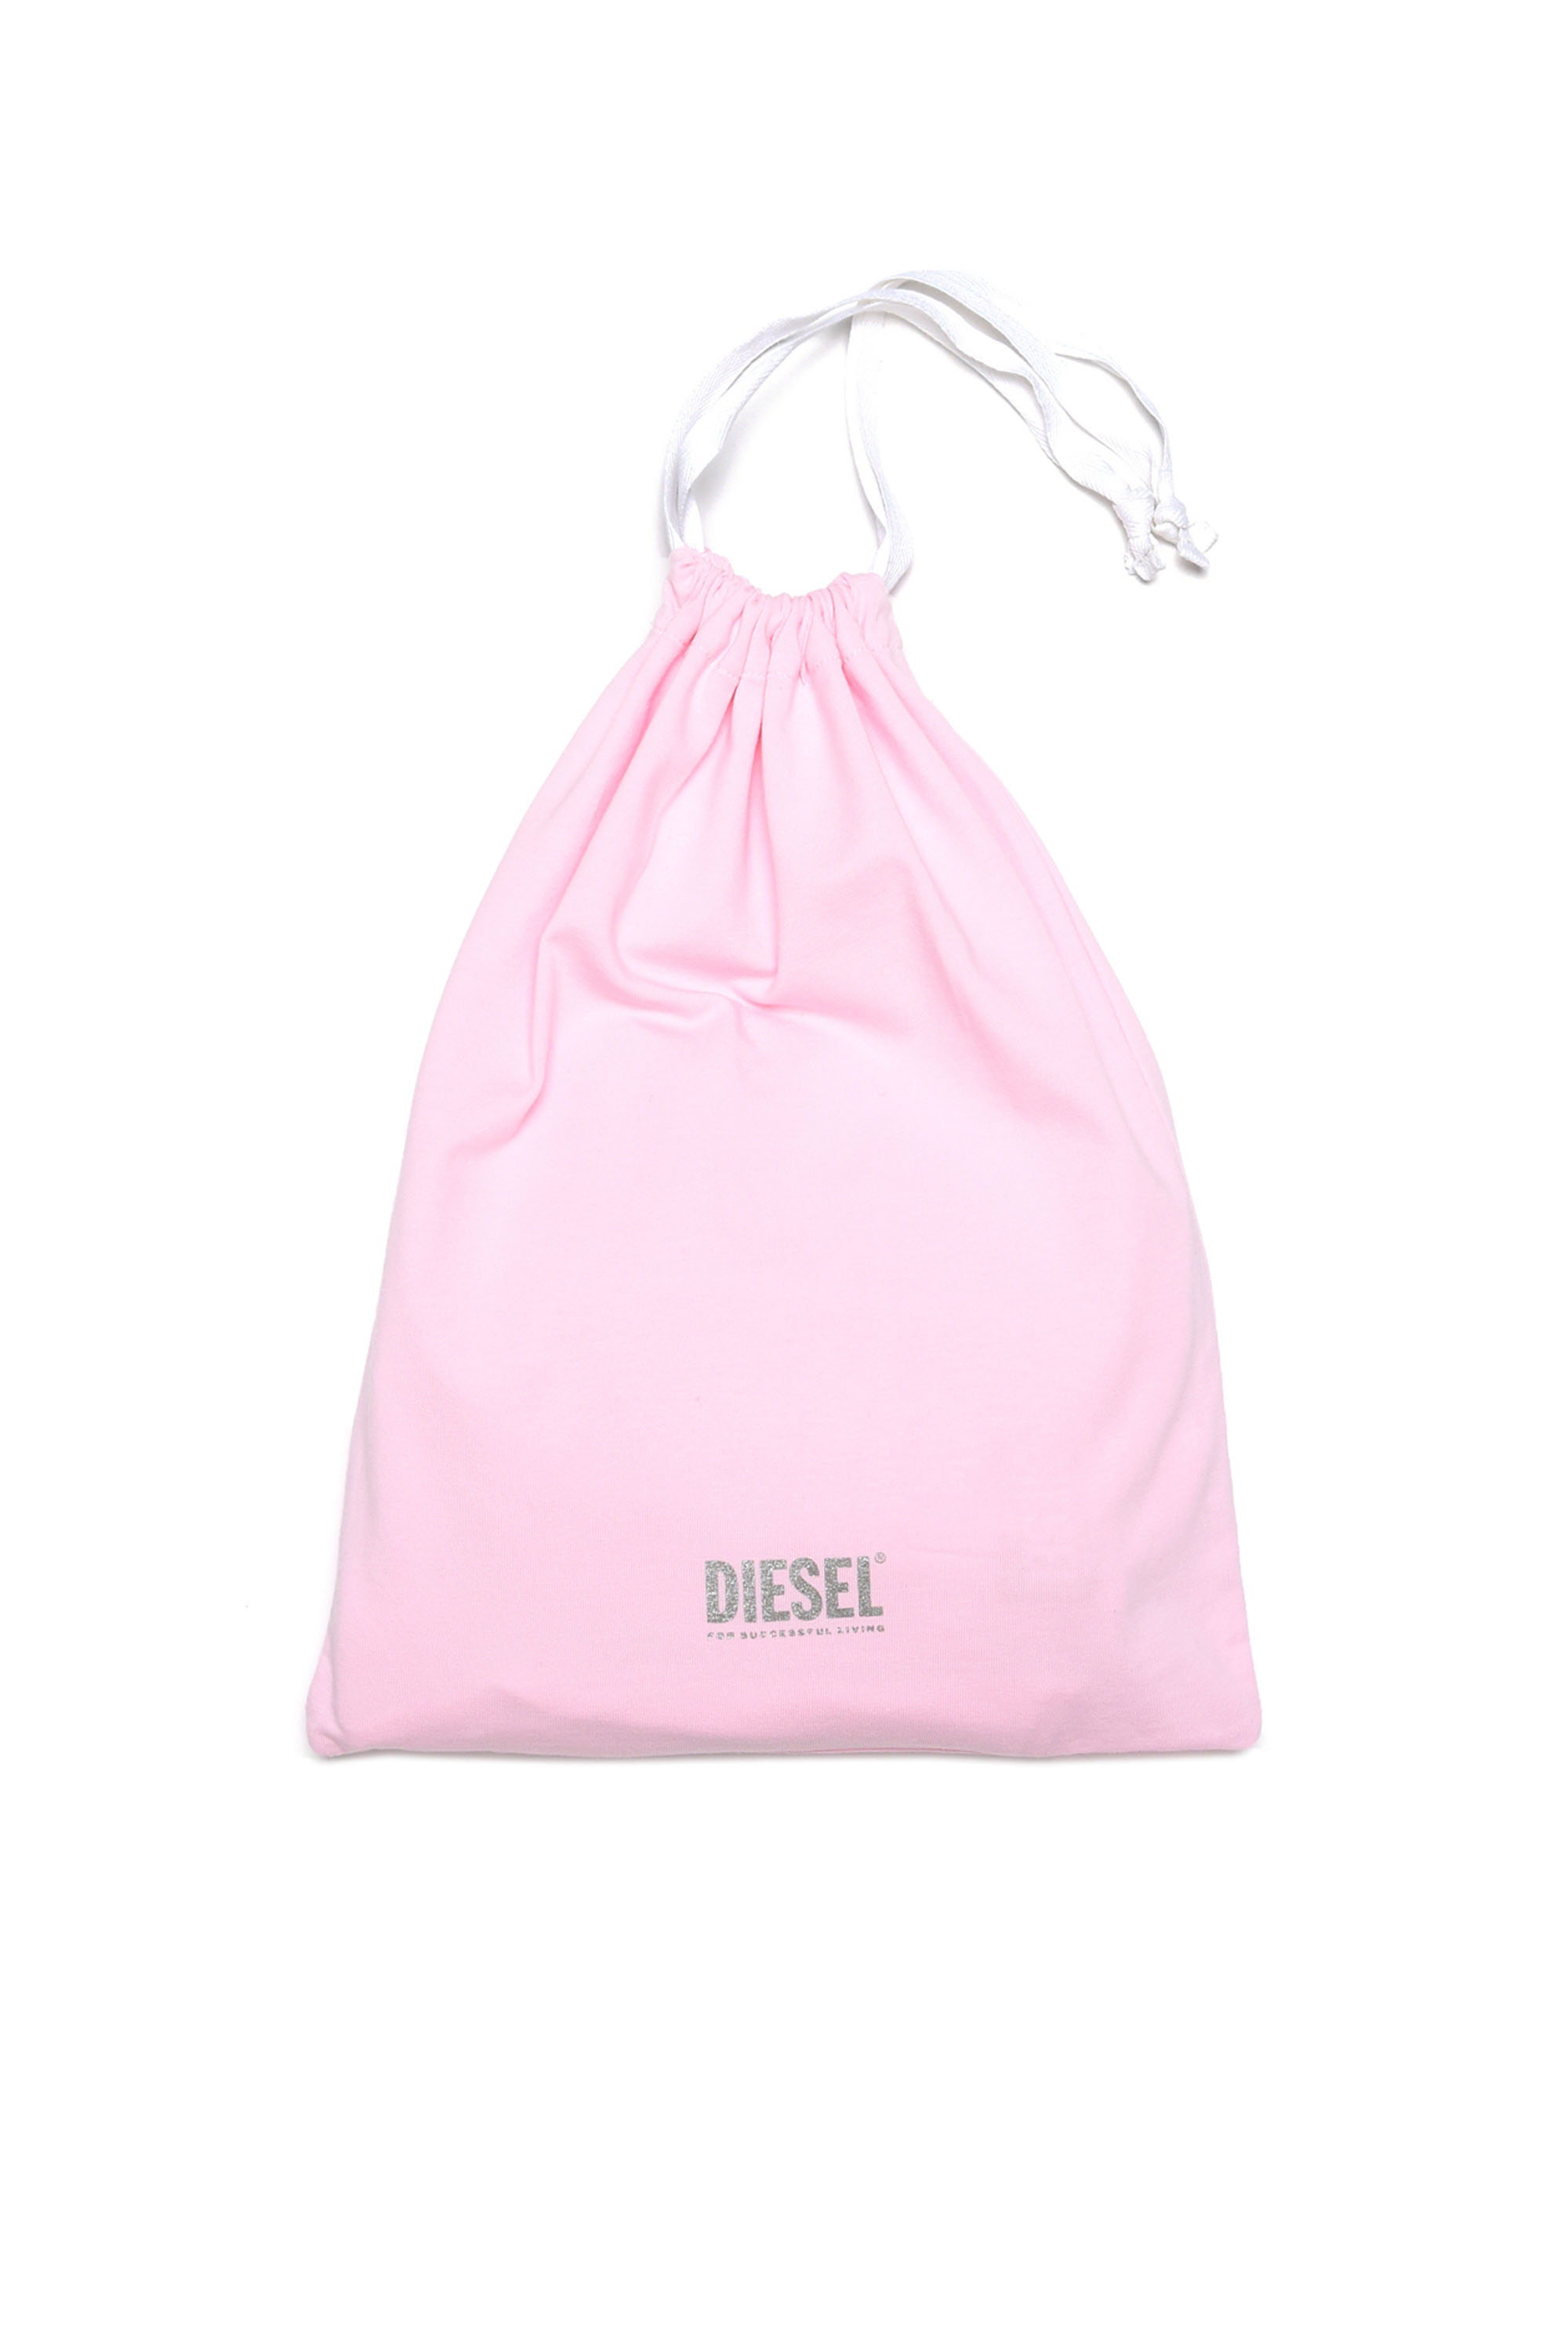 Diesel - UNESIA, Pink - Image 4